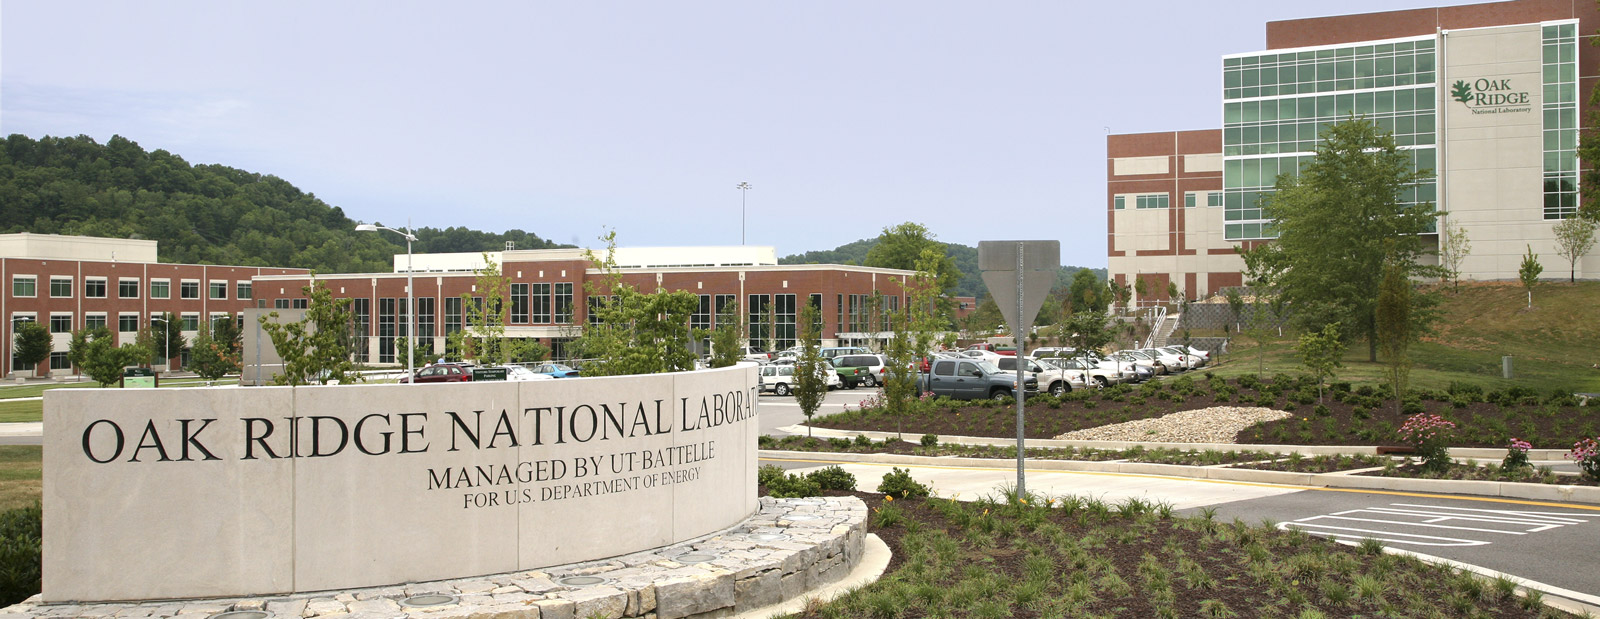 The Oak Ridge National Laboratory campus, managed by UT-Battelle